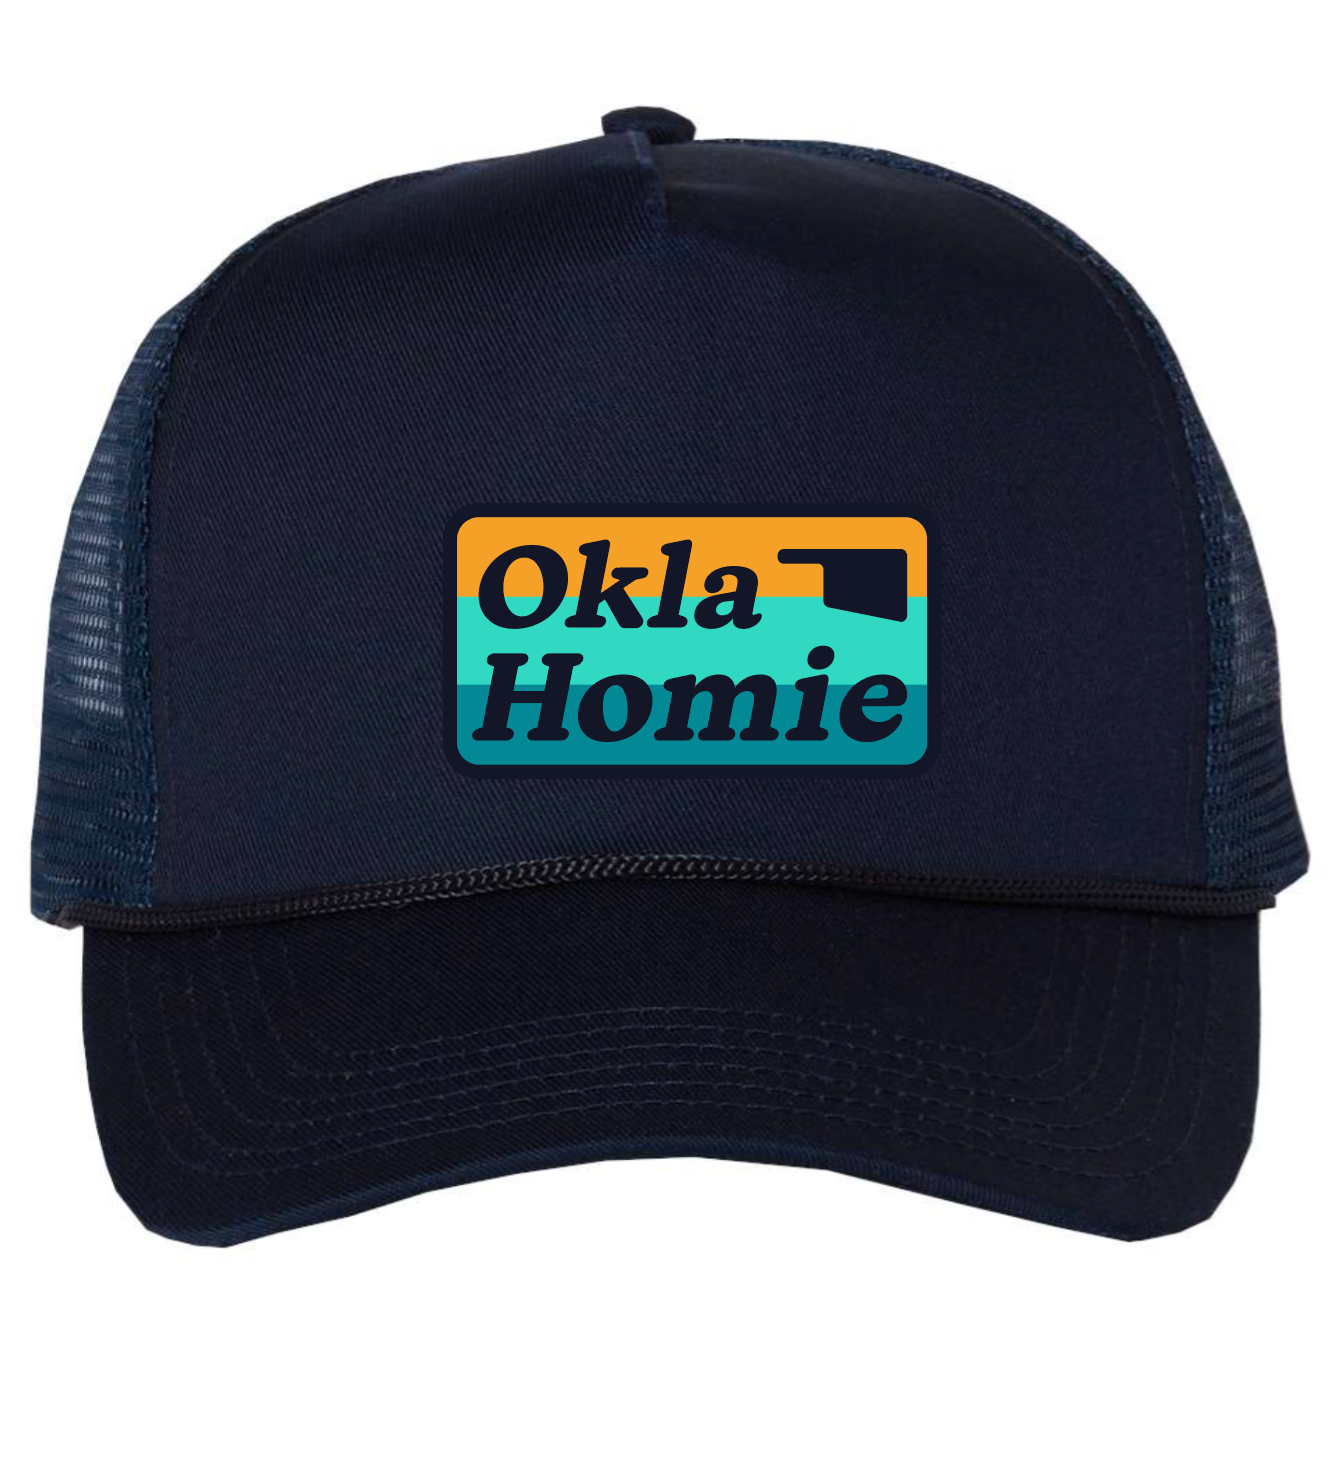 Eufaula Exclusive - Okla Homie Truckers